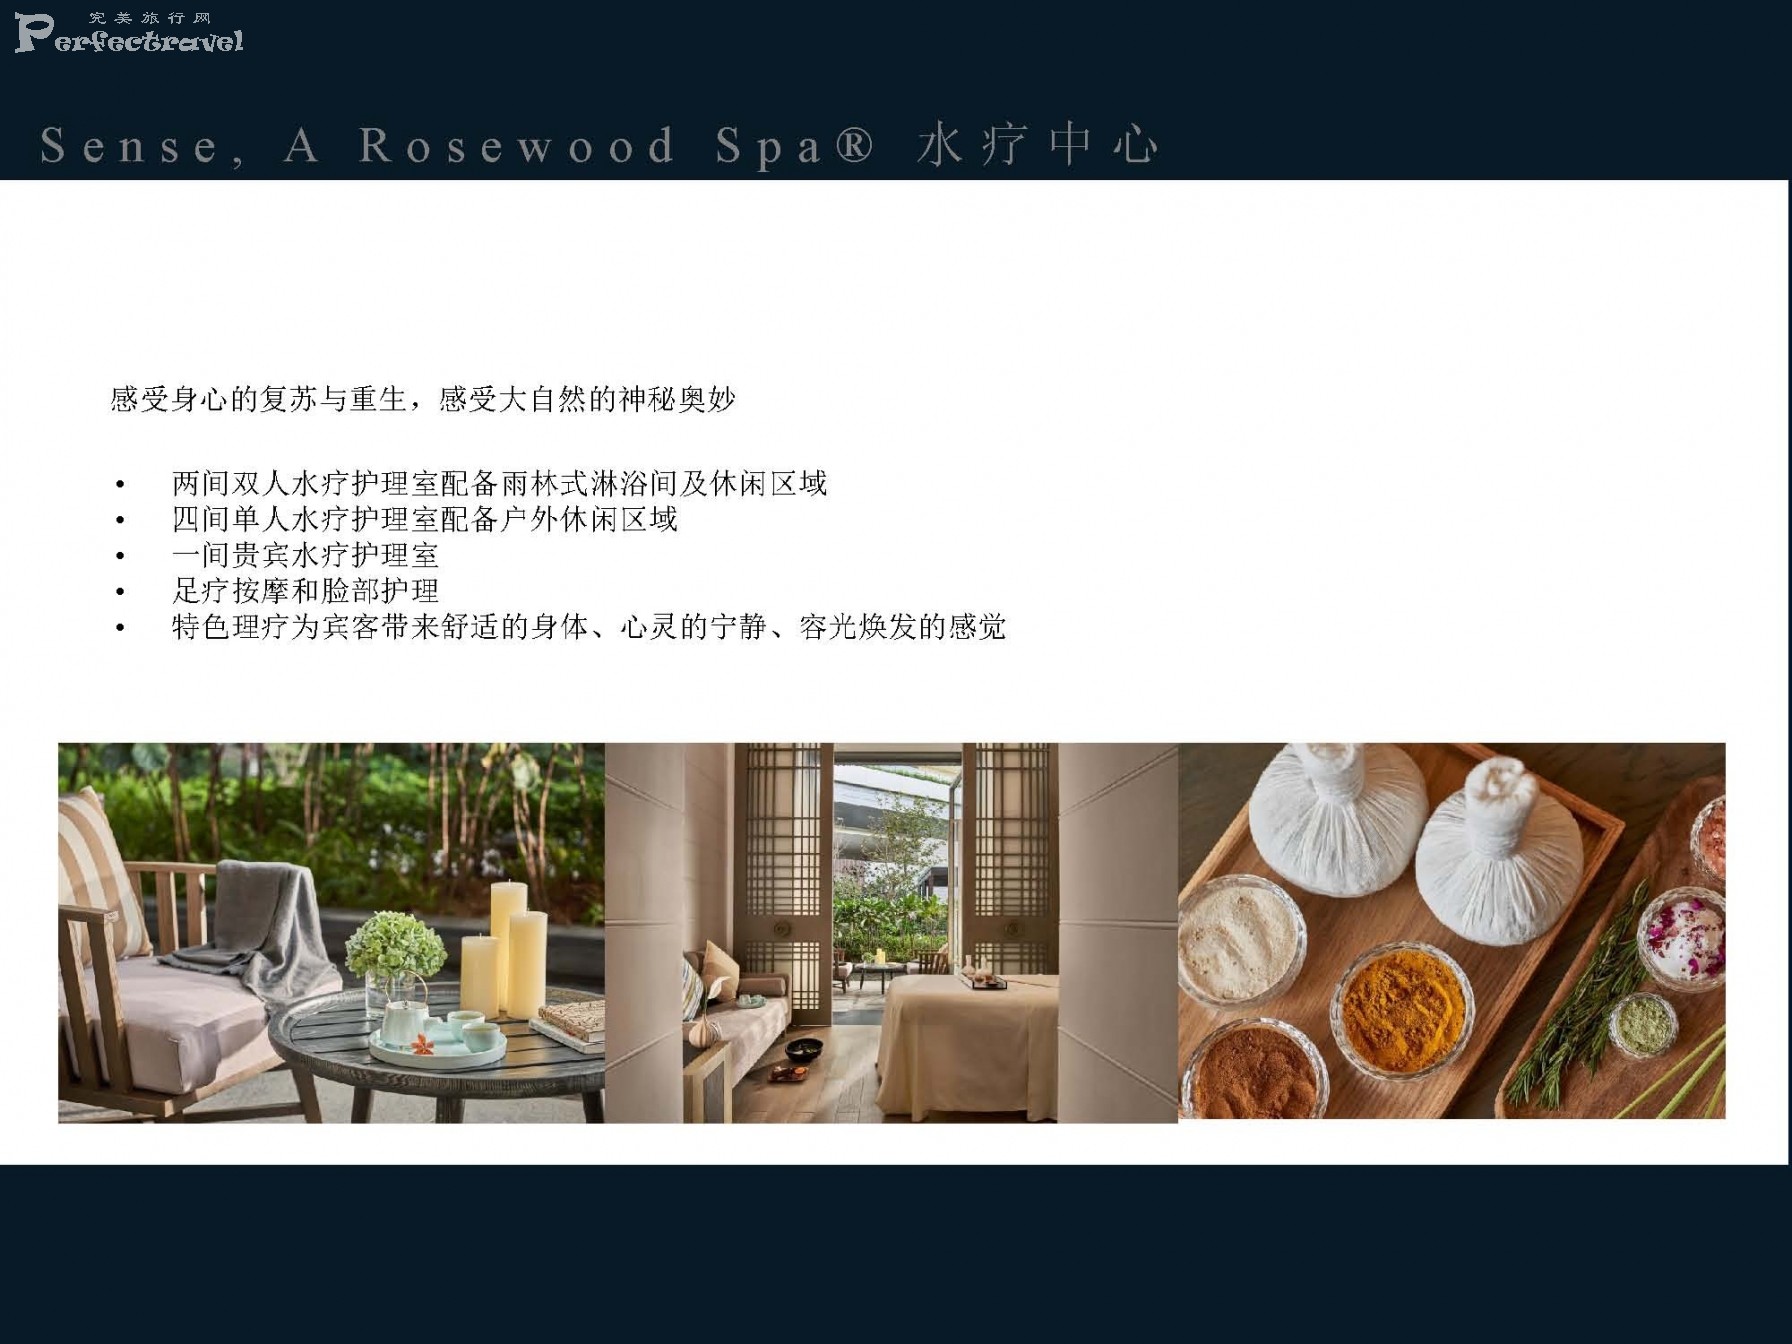 三亚保利瑰丽酒店介绍-2020_Page_21.jpg